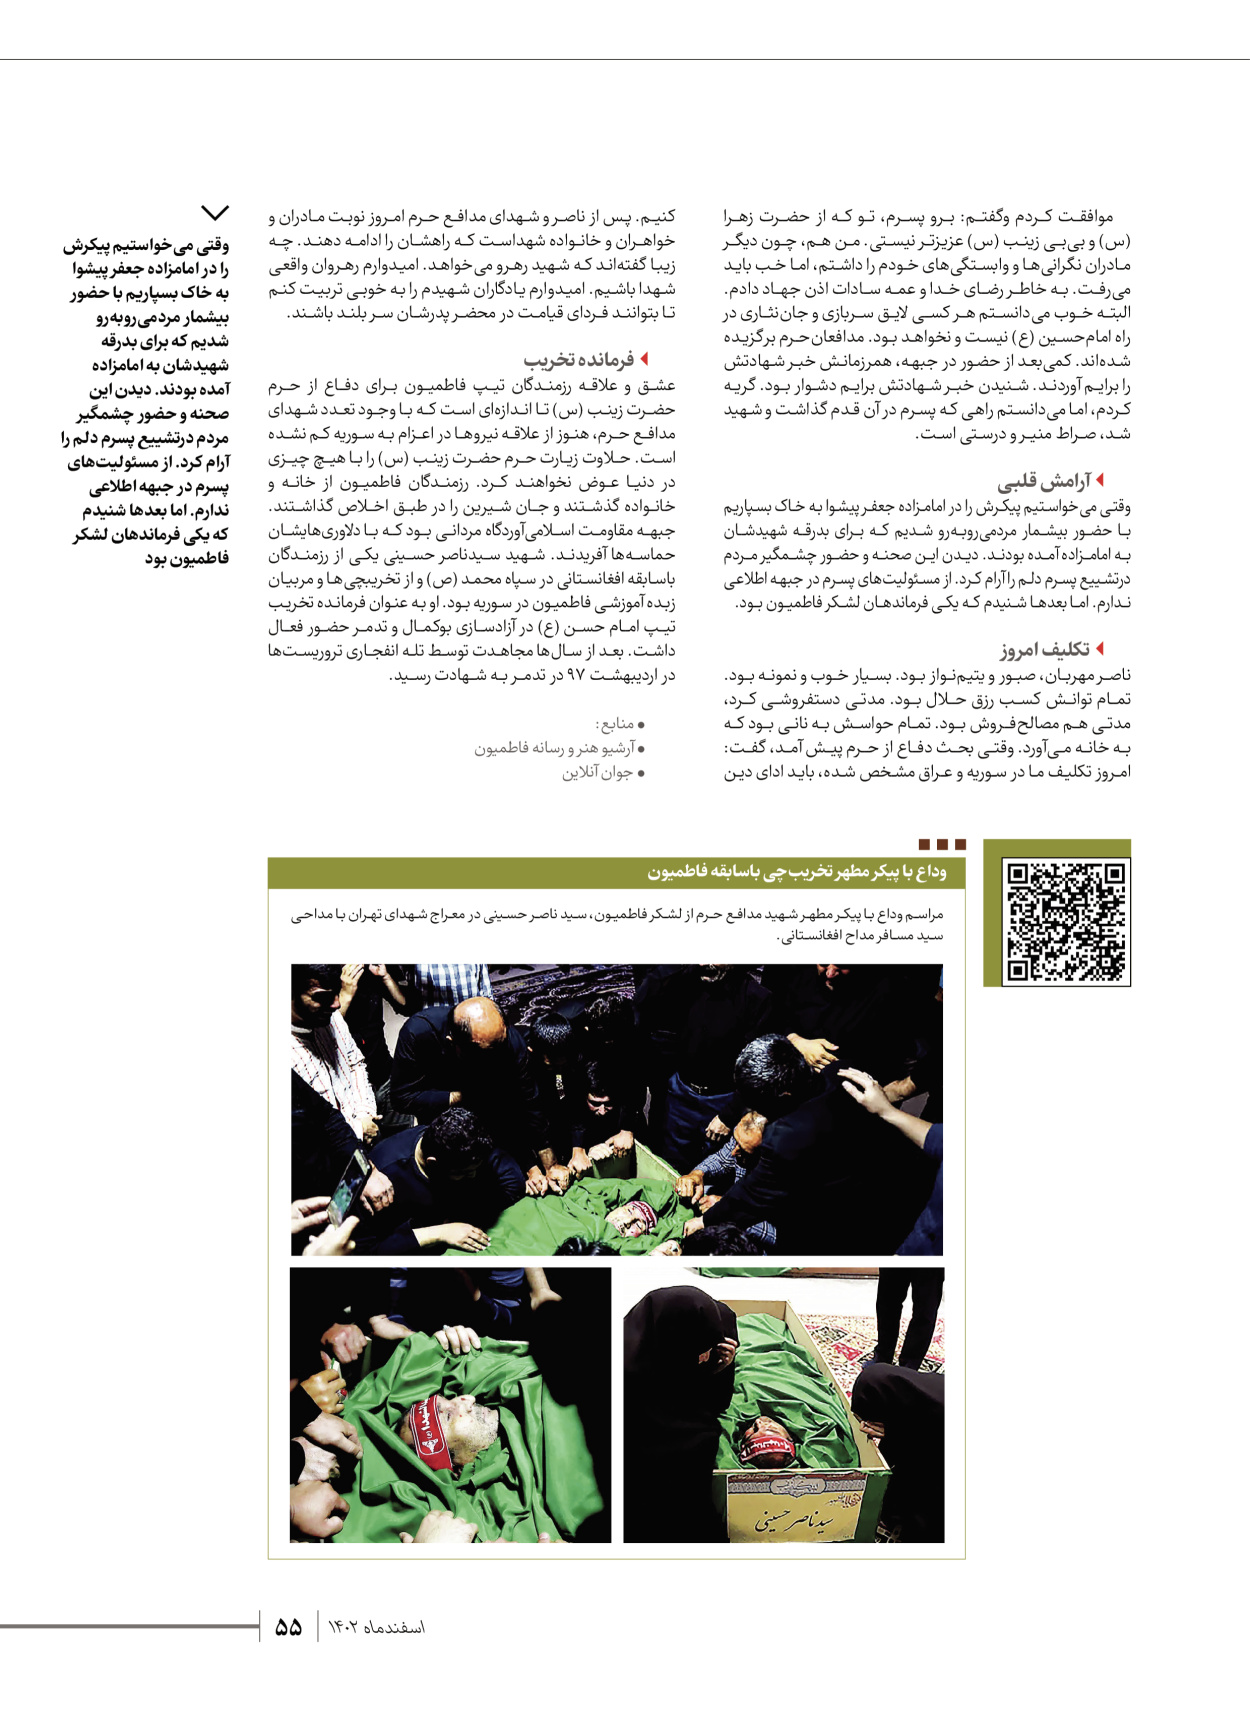 روزنامه ایران - ویژه نامه شهدای قدس ۵ - ۱۹ اسفند ۱۴۰۲ - صفحه ۵۵